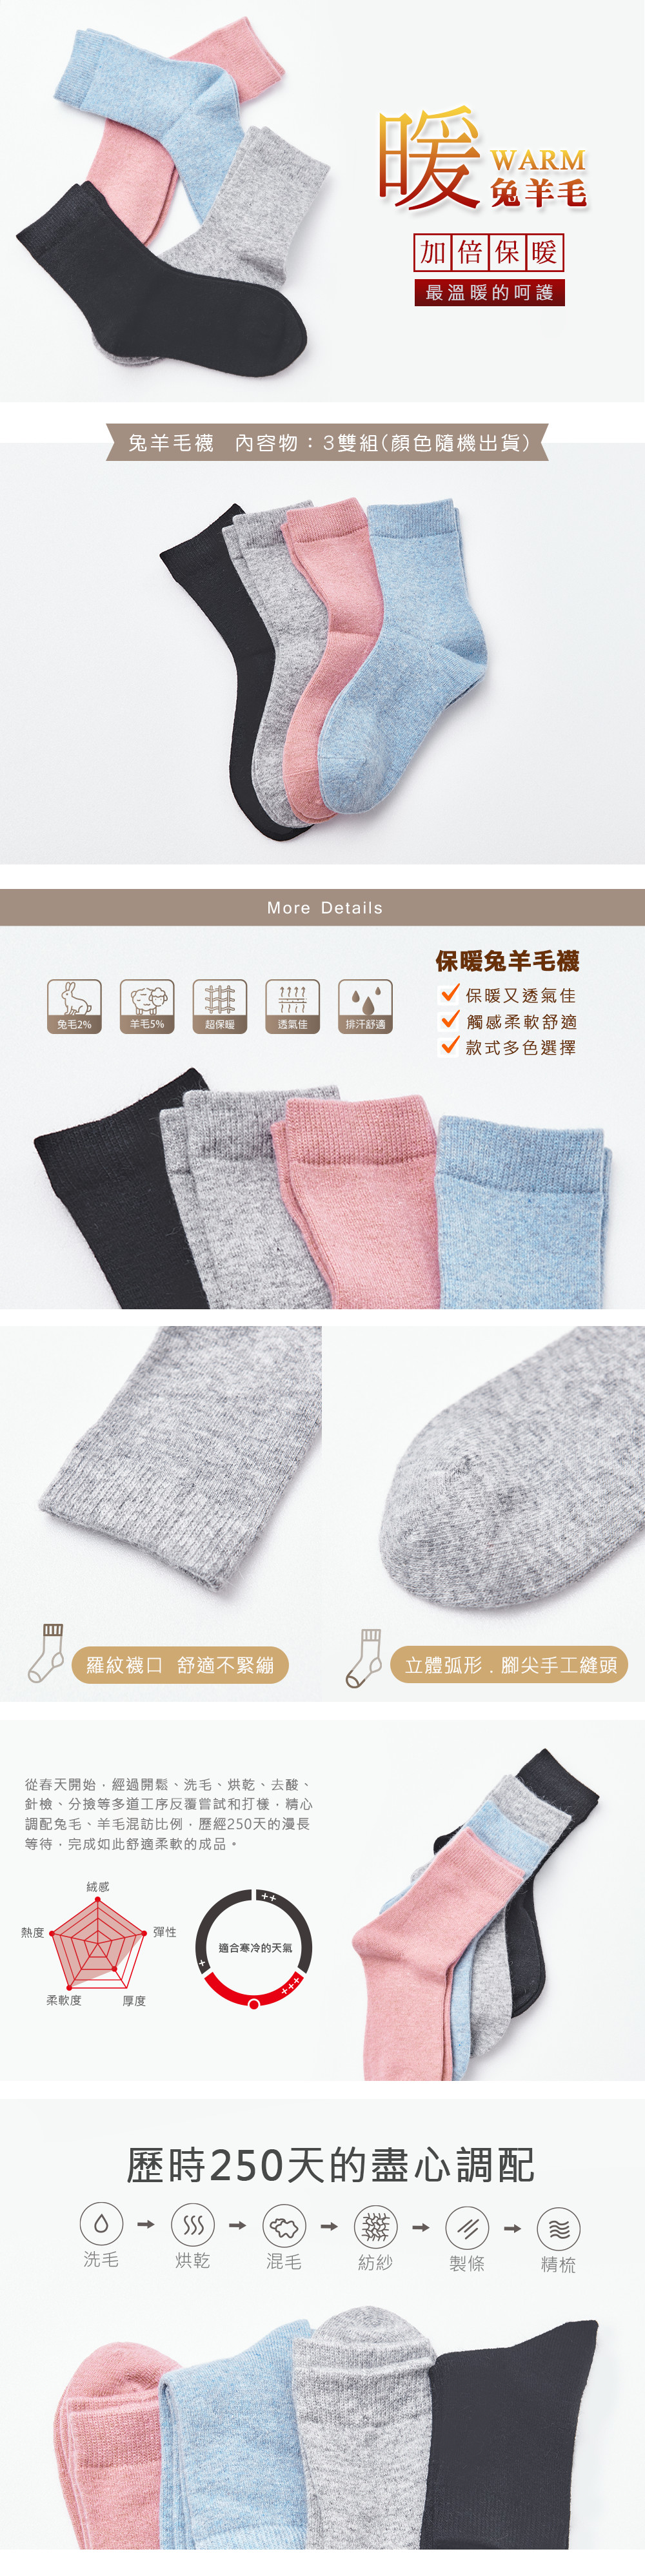 保暖兔羊毛襪(3雙)-611